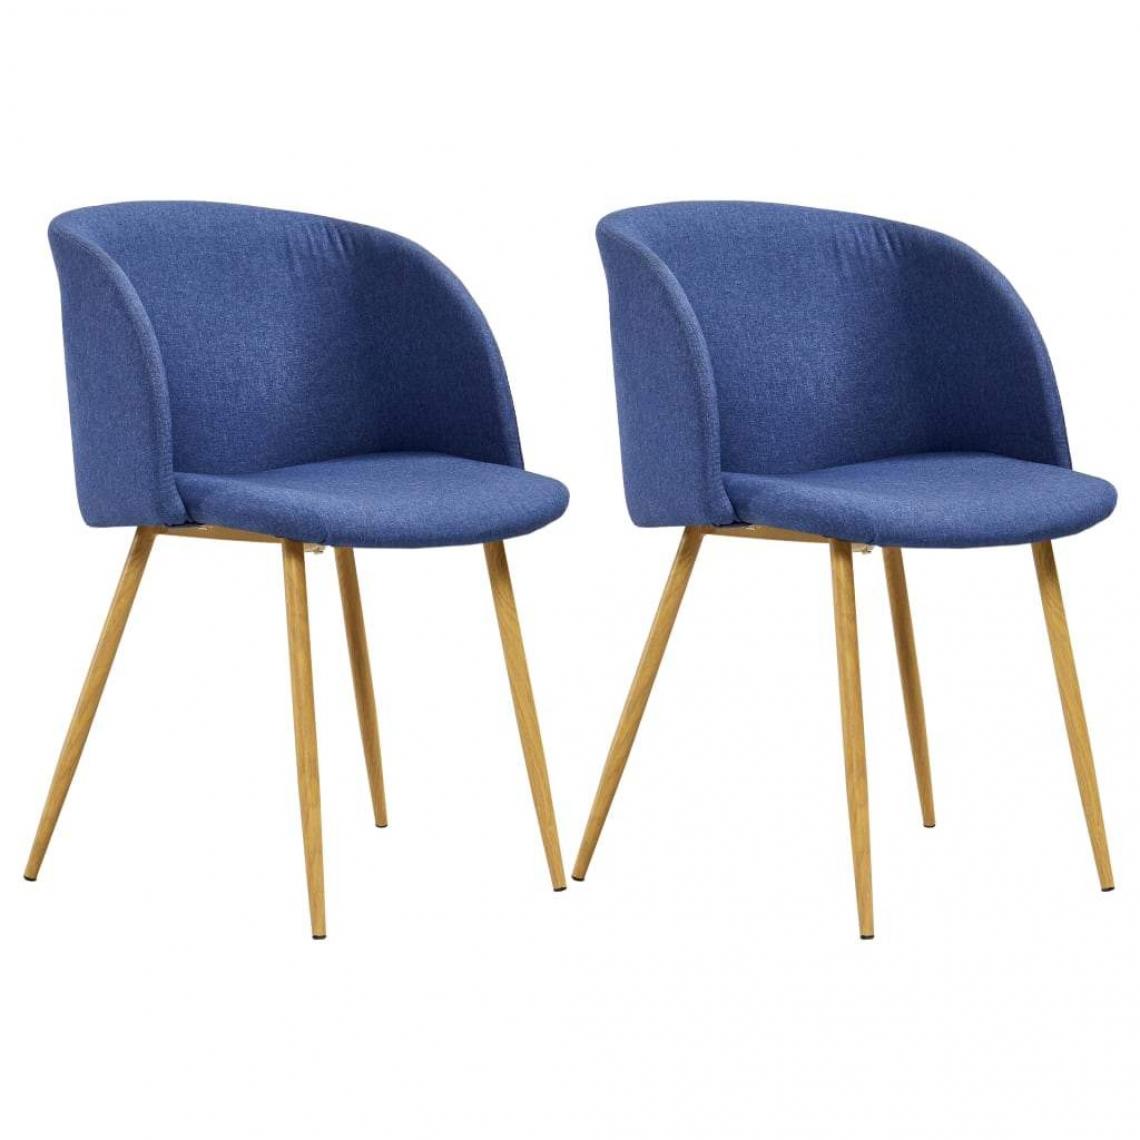 Decoshop26 - Lot de 2 chaises de salle à manger cuisine design moderne tissu bleu CDS020242 - Chaises